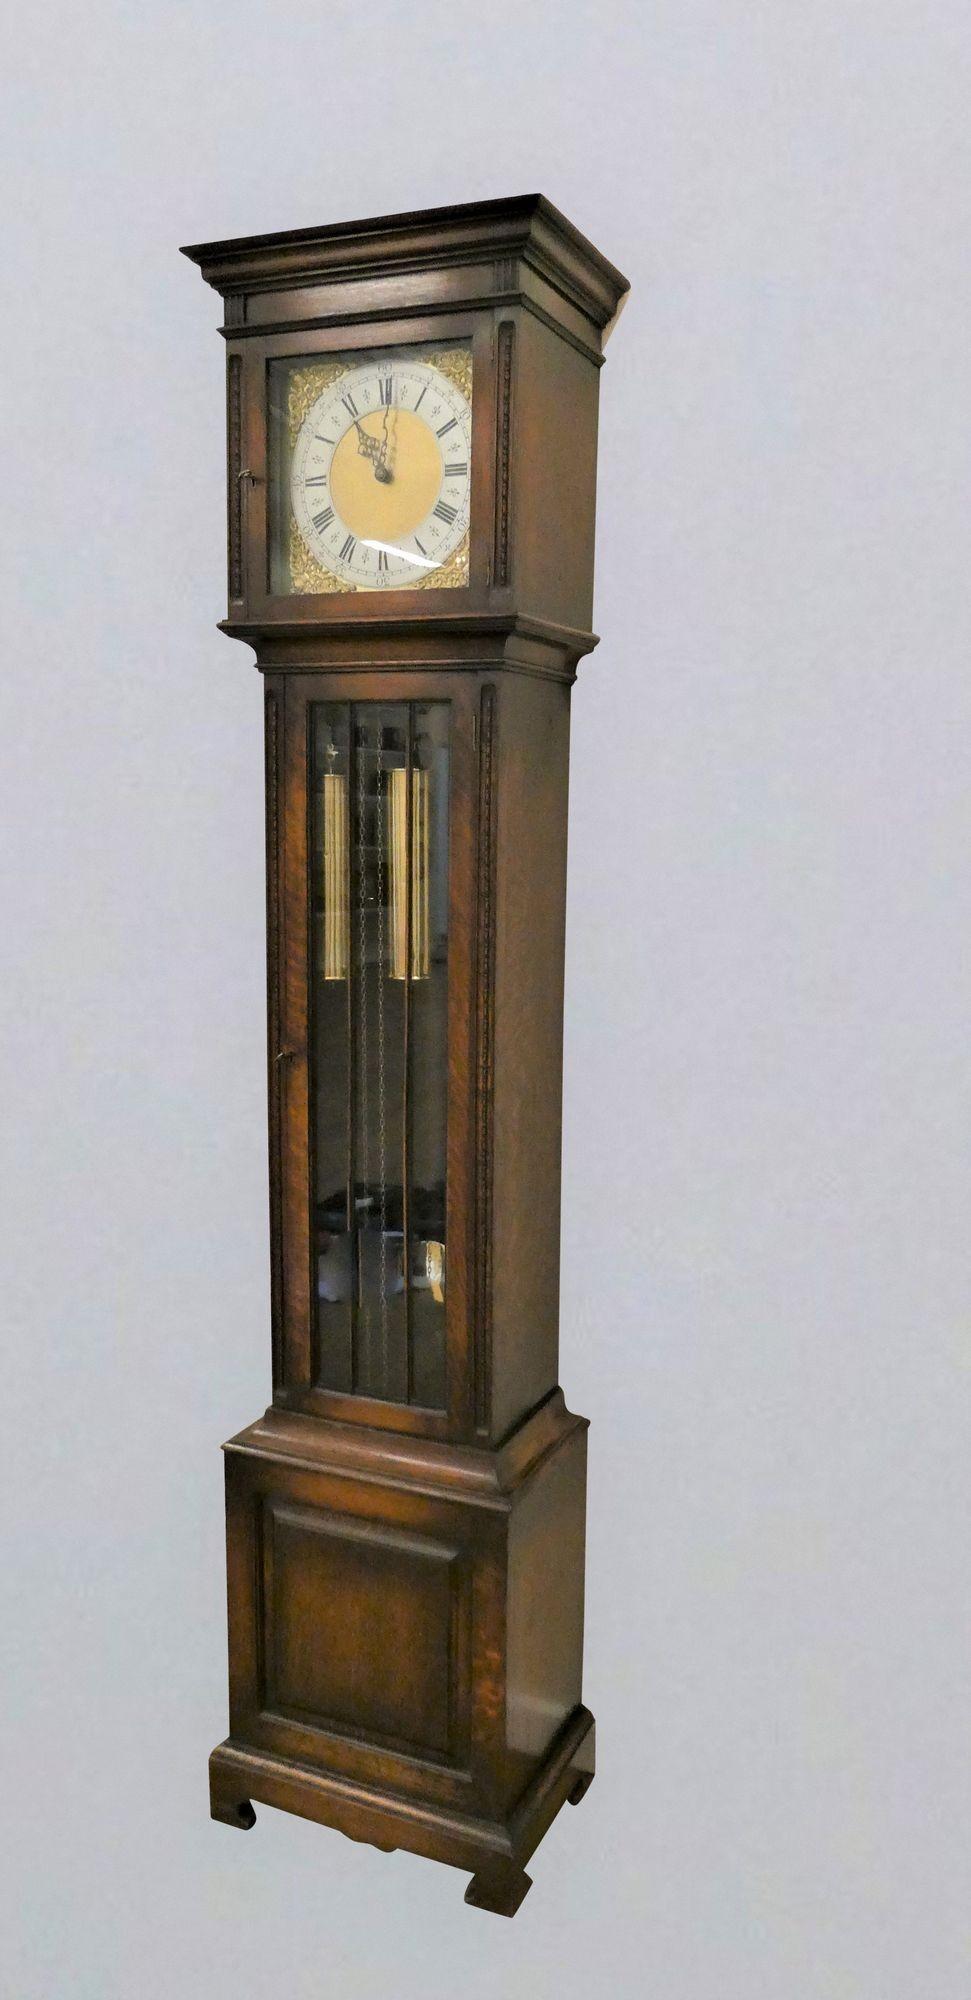 Horloge à carillon Westminster de l'époque édouardienne
 
Pendule Longcase édouardienne logée dans un coffret en chêne, porte vitrée à ouverture frontale avec décoration perlée.  Socle surélevé et étagé avec panneau central, capot supérieur plat